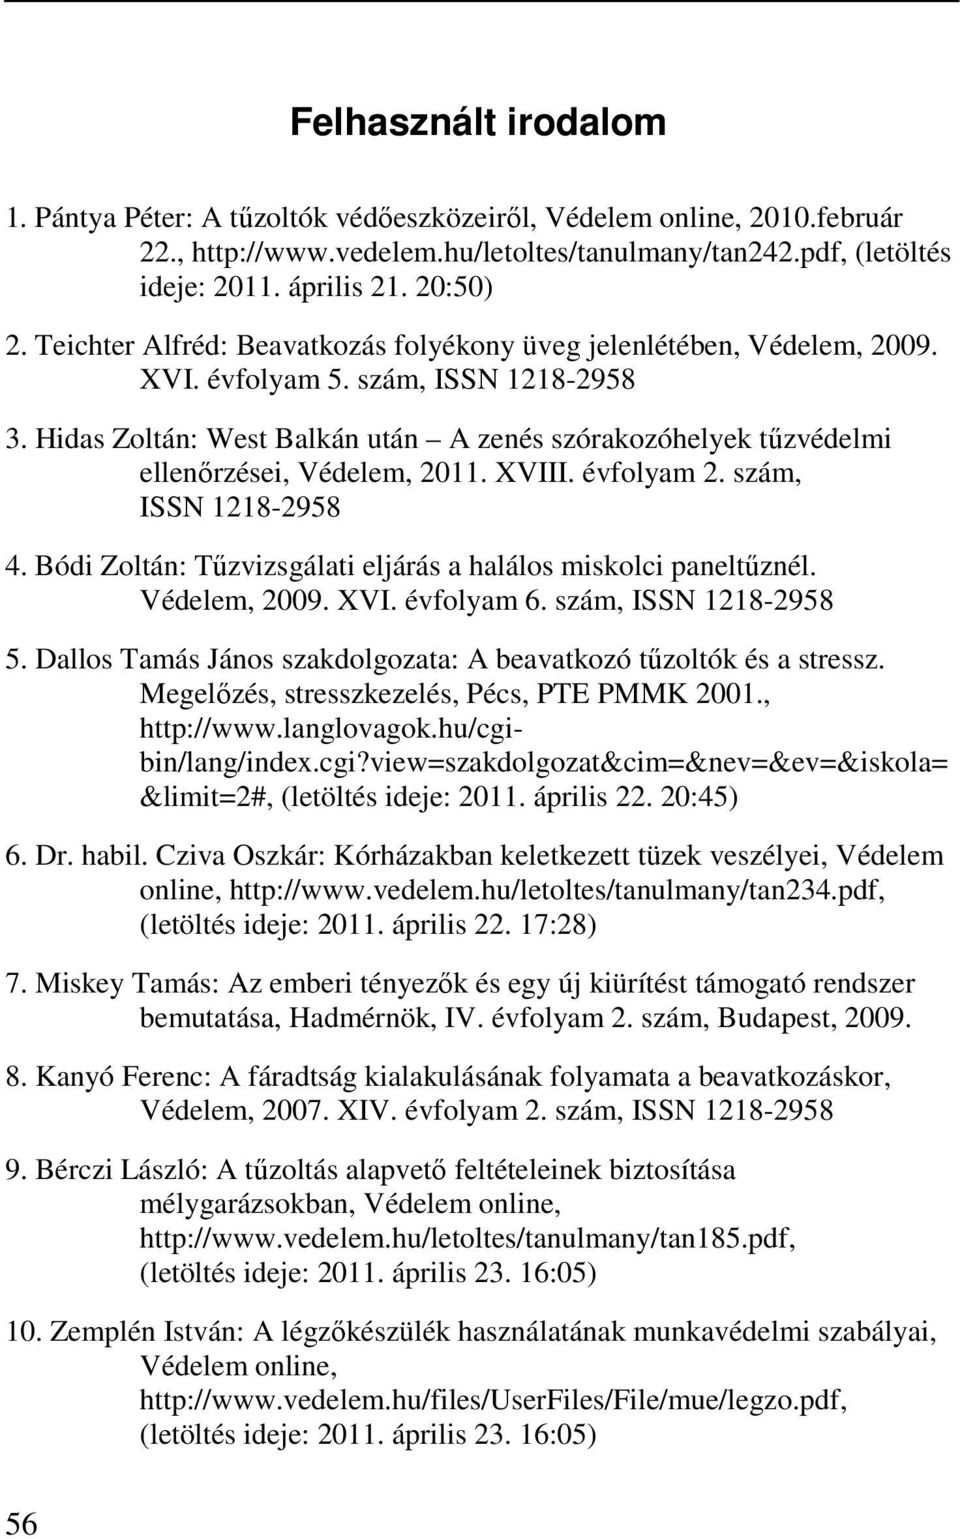 Hidas Zoltán: West Balkán után A zenés szórakozóhelyek tűzvédelmi ellenőrzései, Védelem, 2011. XVIII. évfolyam 2. szám, ISSN 1218-2958 4.